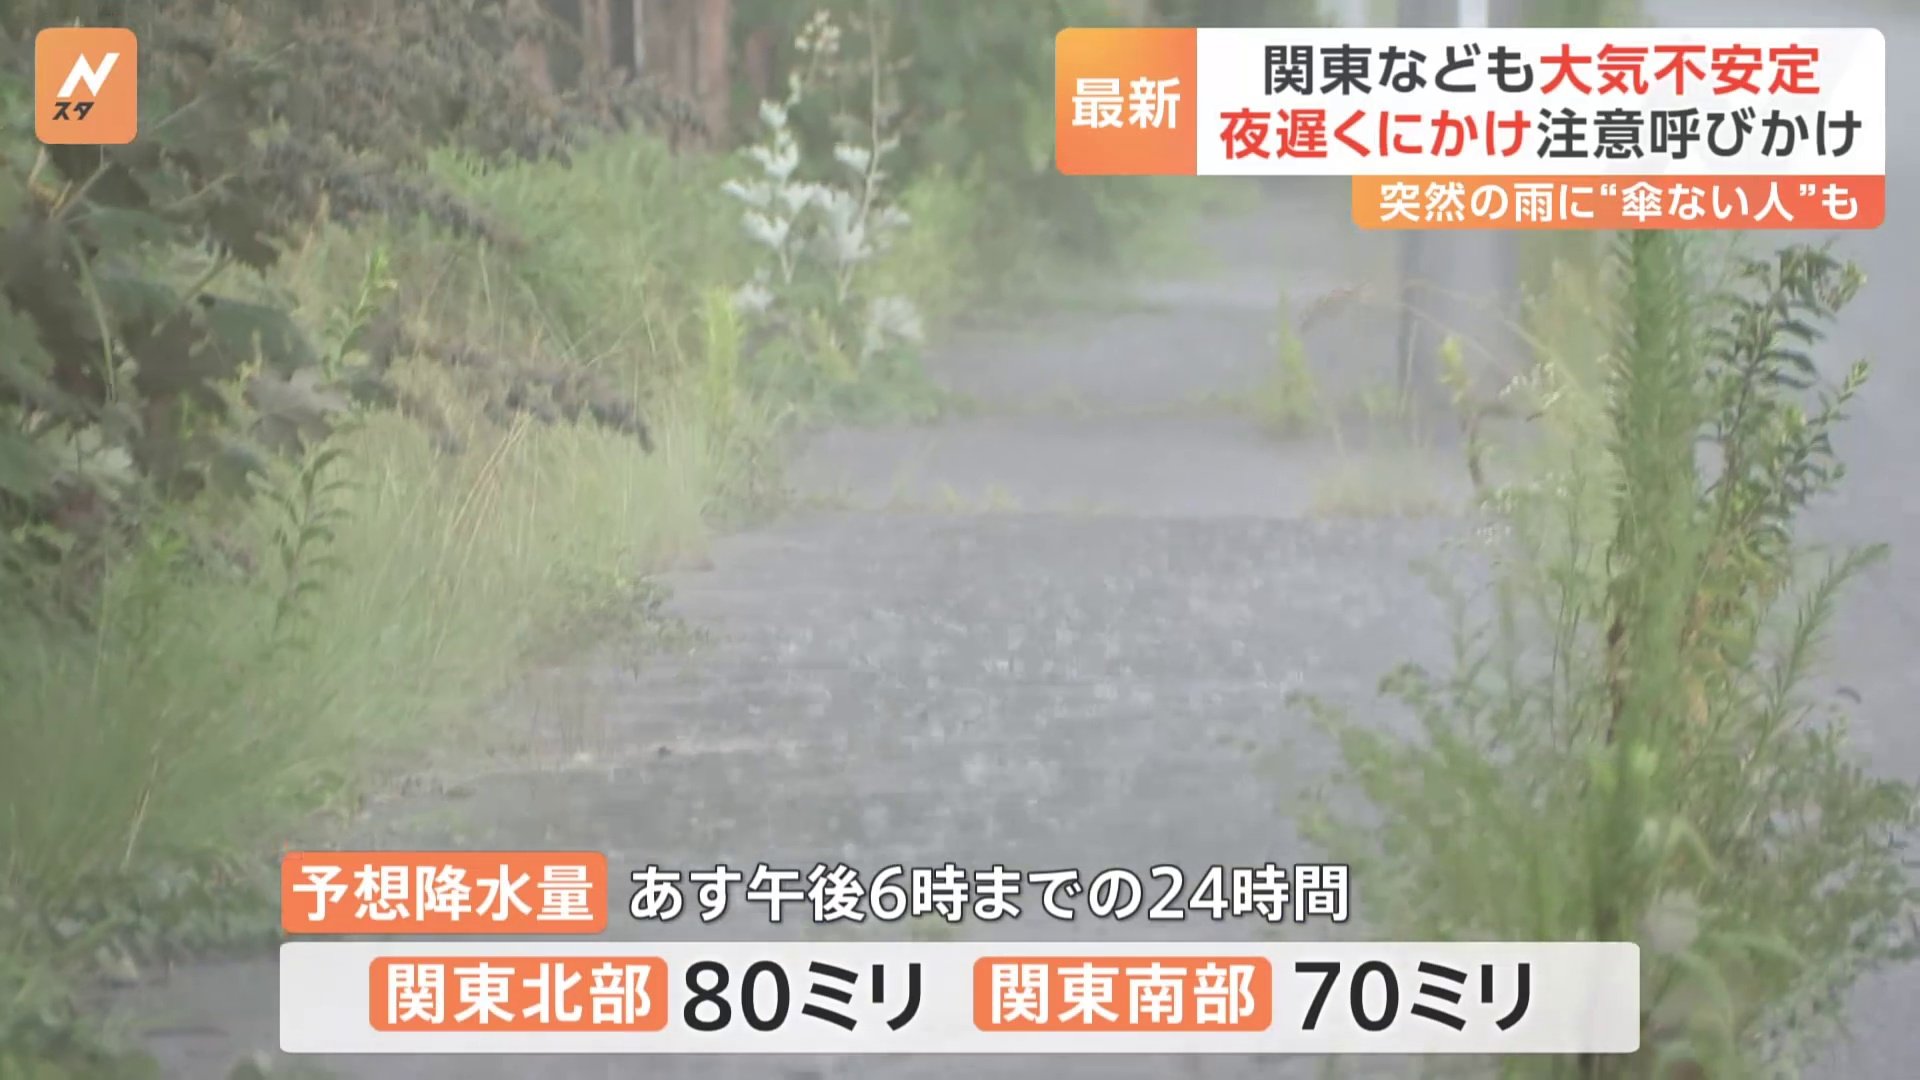 関東などでも大気不安定 夜遅くにかけ注意呼びかけ、あすも東日本では天気急変のおそれ【予報士解説】